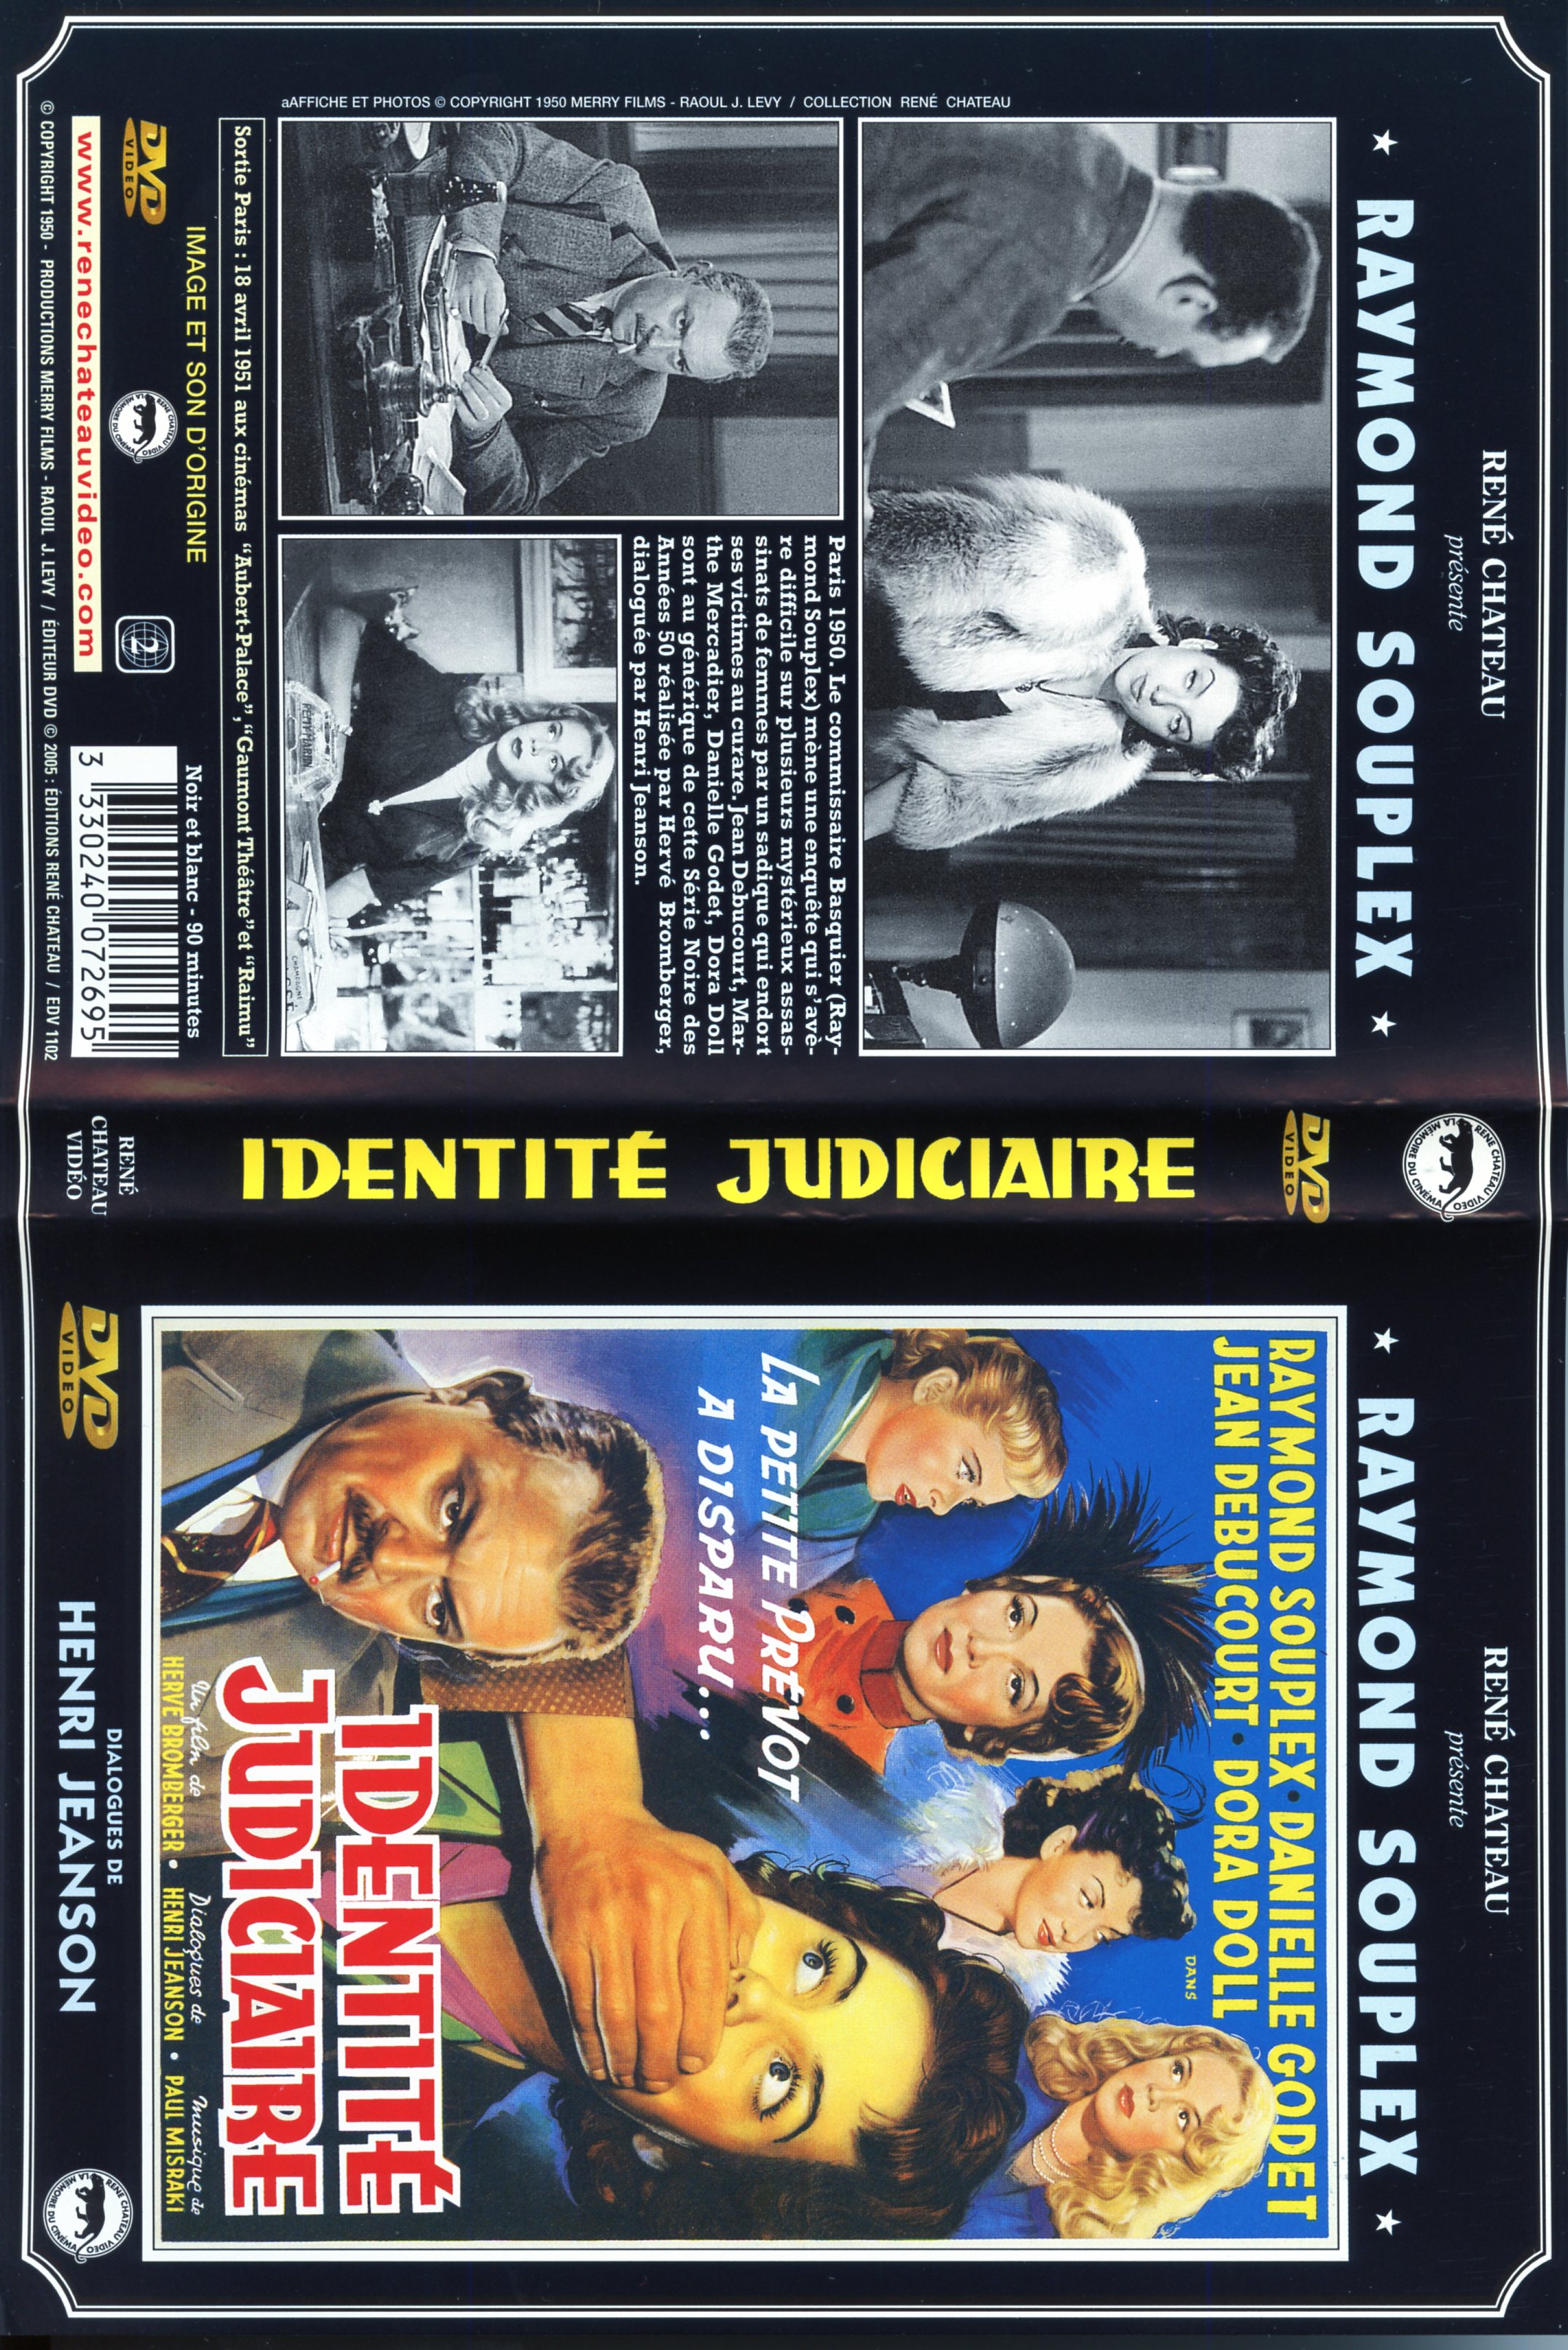 Jaquette DVD Identit judiciaire